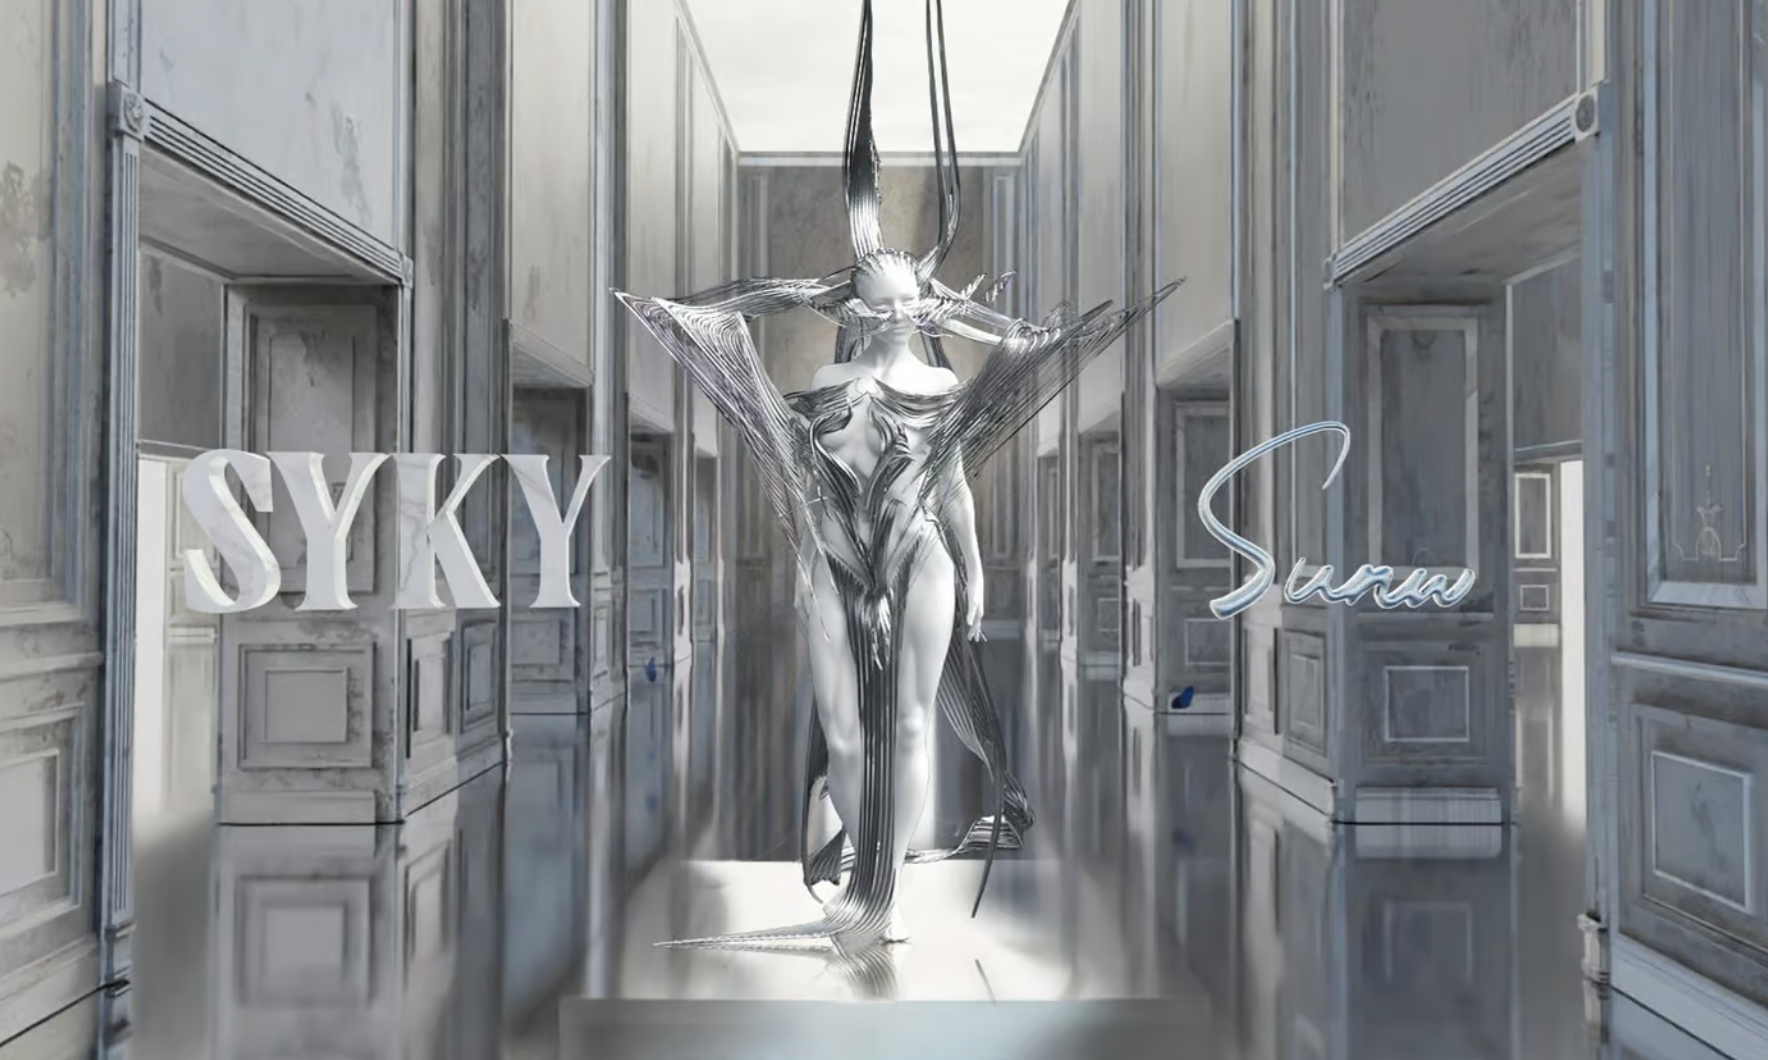 数字时尚平台 Syky 将于伦敦时装周期间亮相